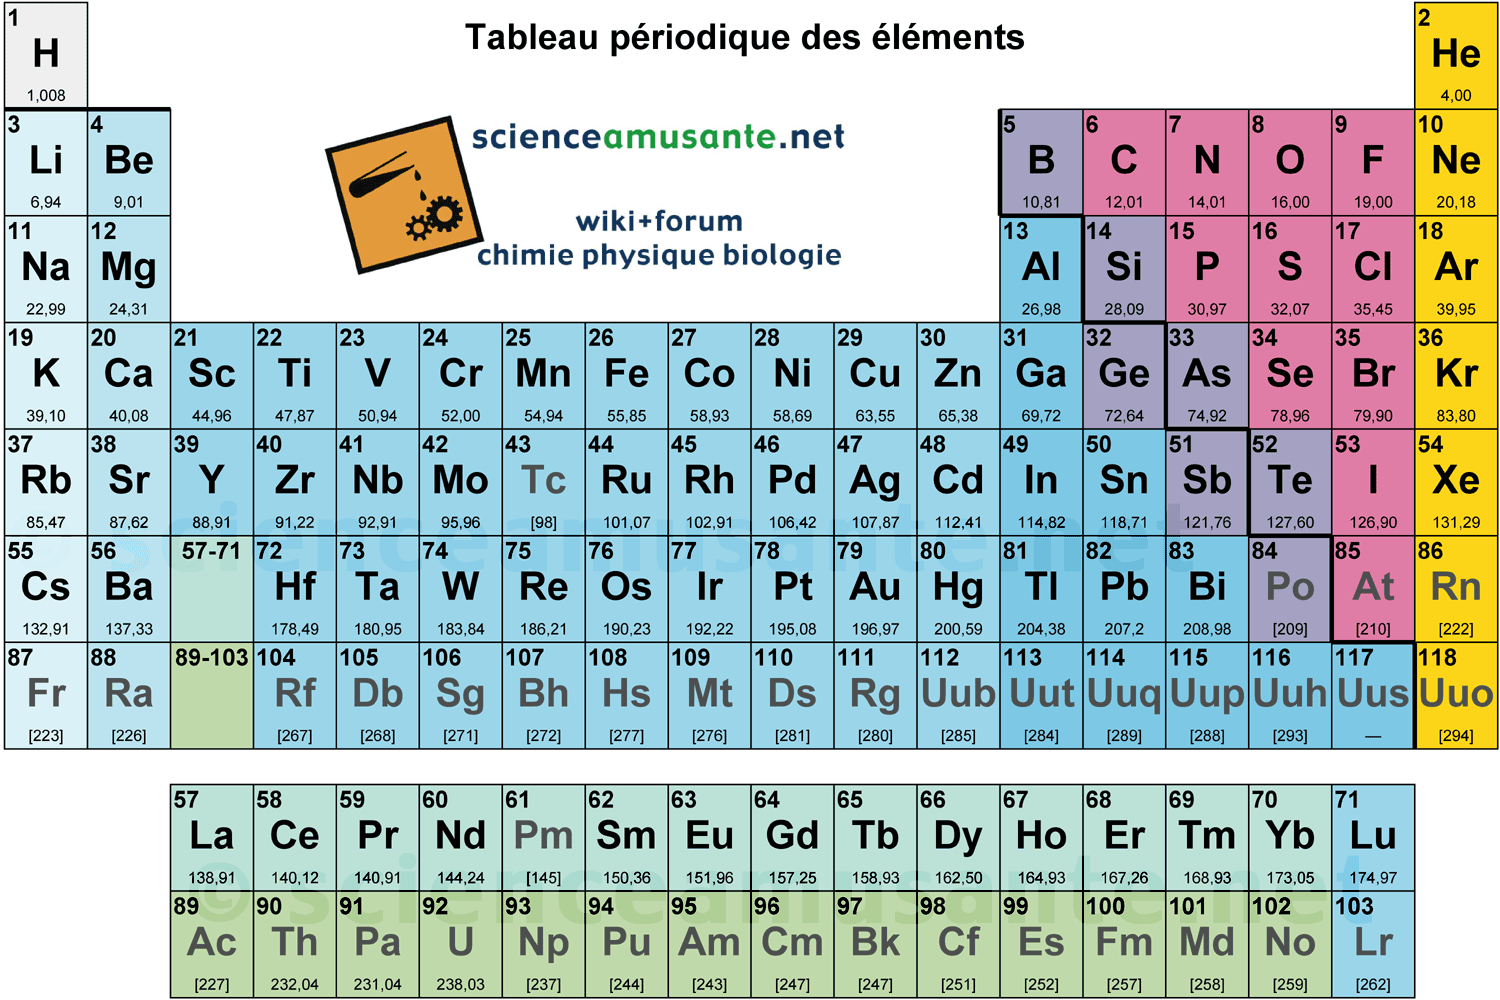 Tableau periodique des elements version simplifie